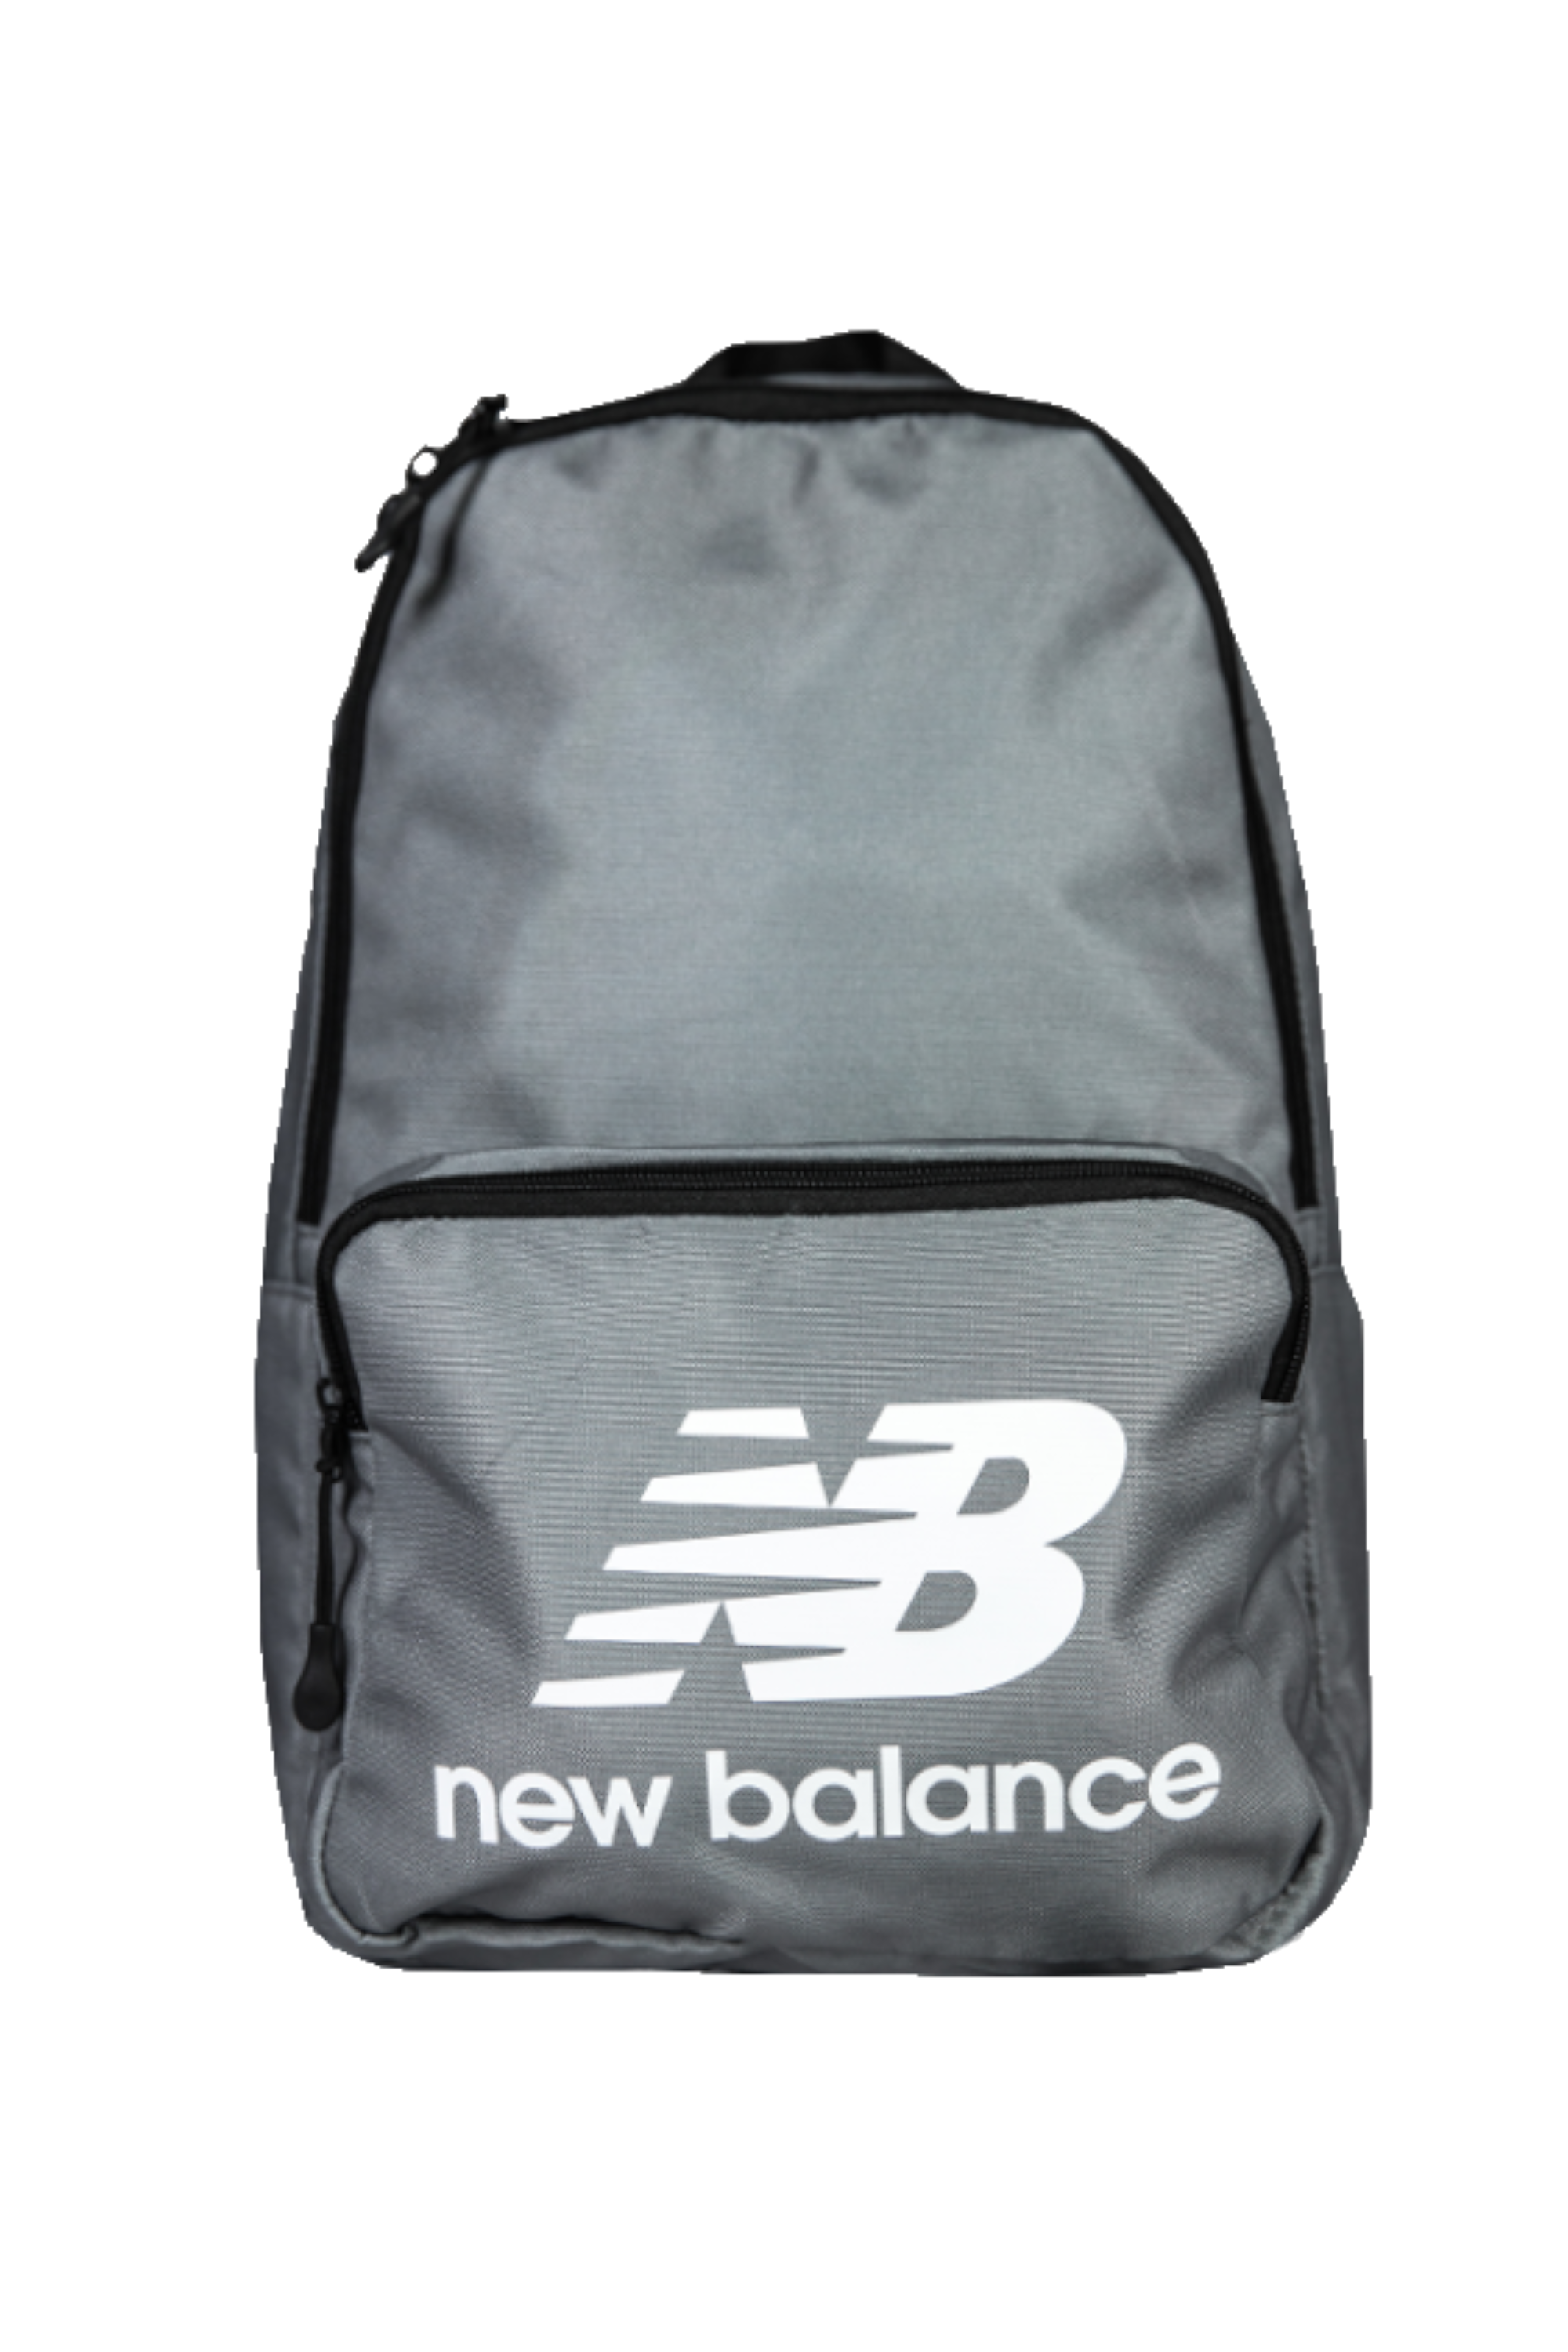 new balance rucksack